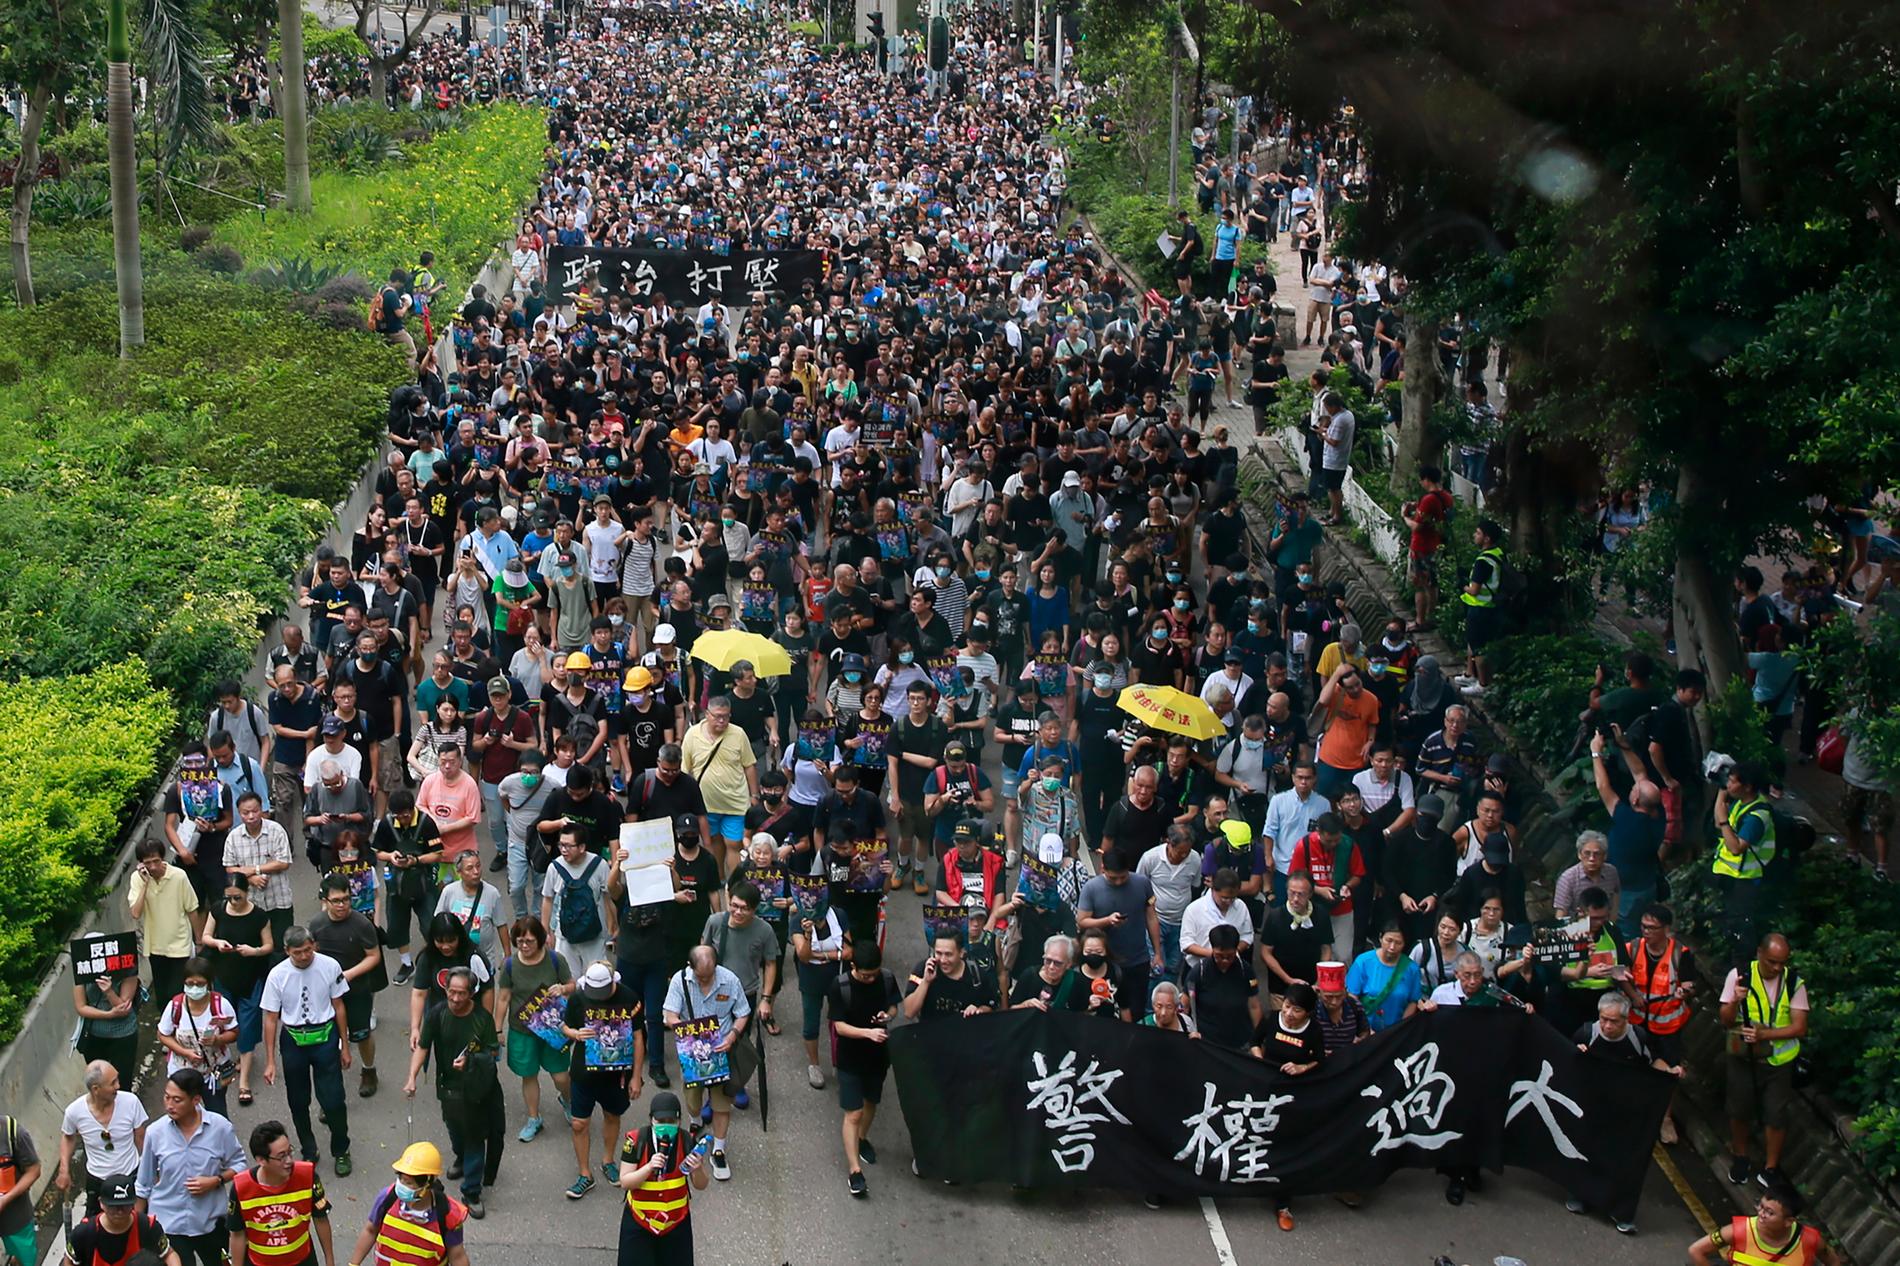 Människor marscherar med en banderoll med texten "Polisens makt är för stor".